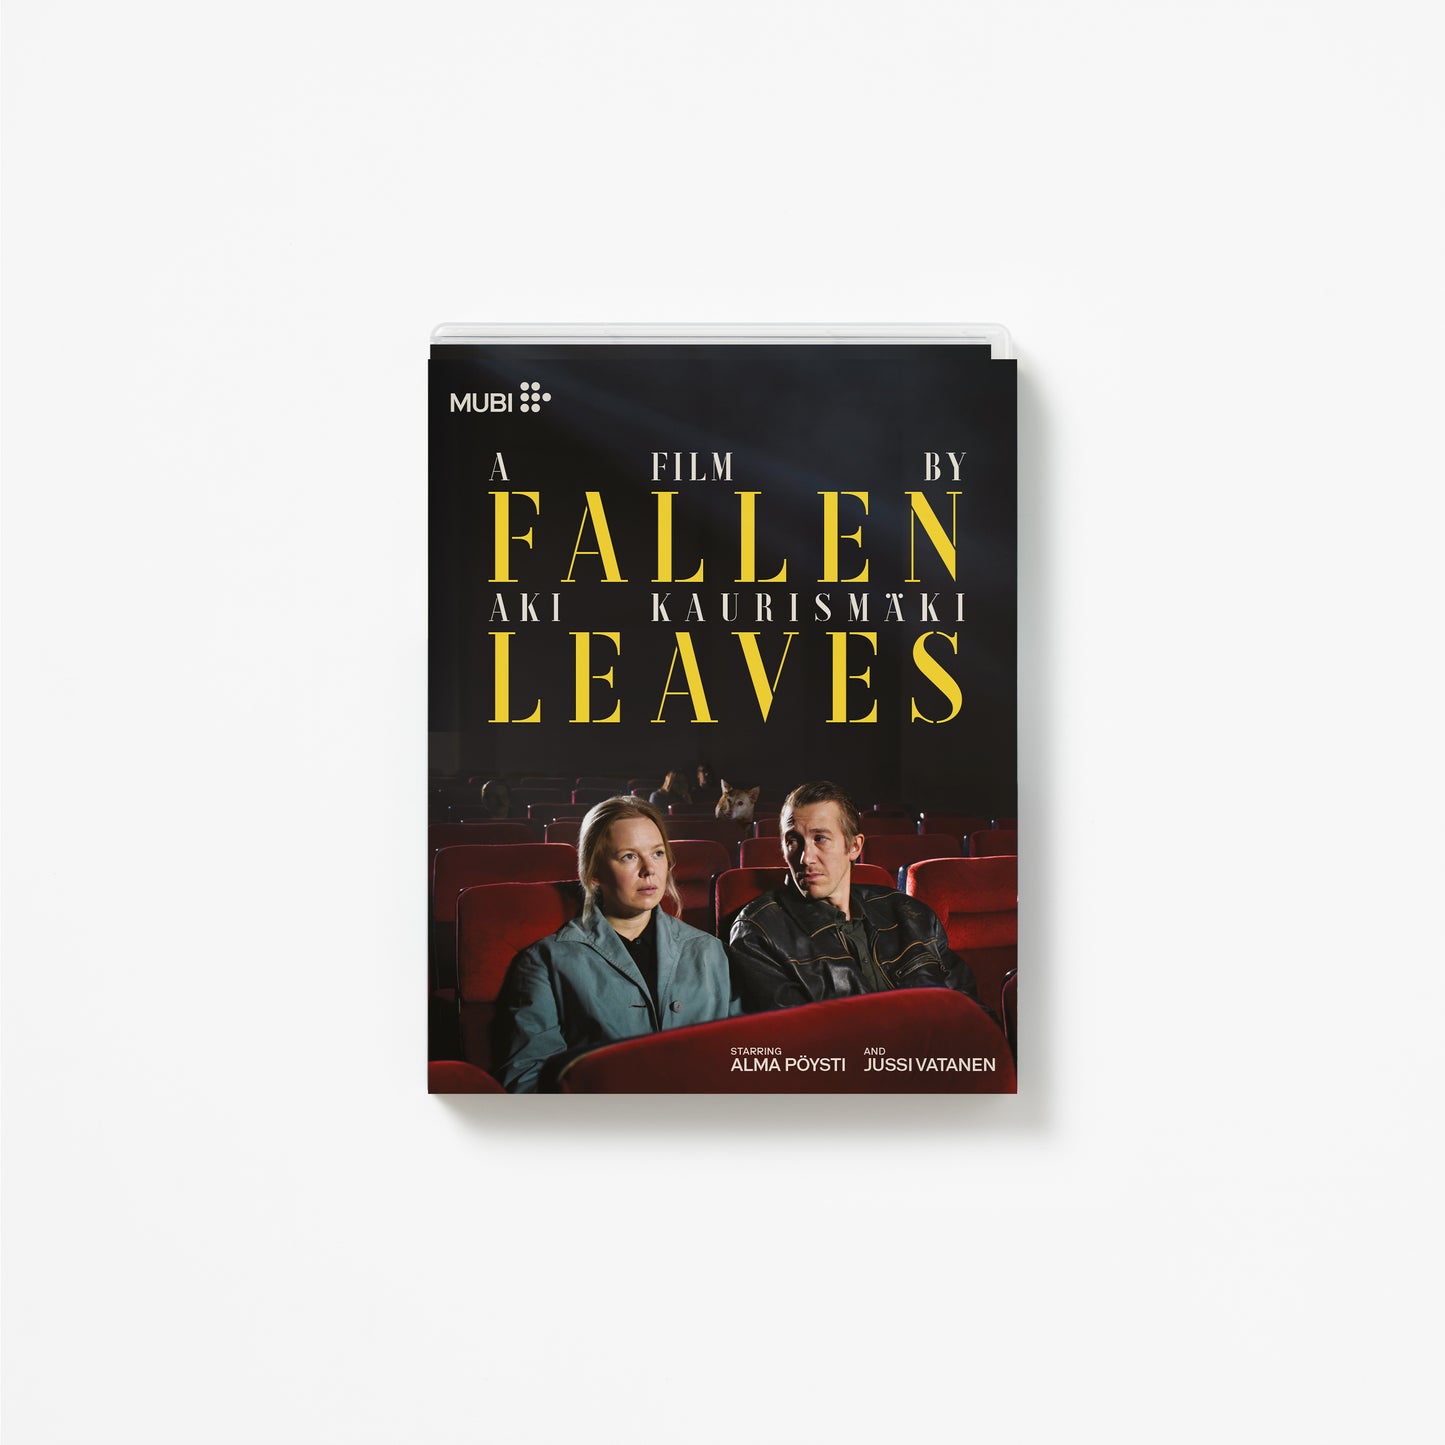 FALLEN LEAVES [Blu-ray]